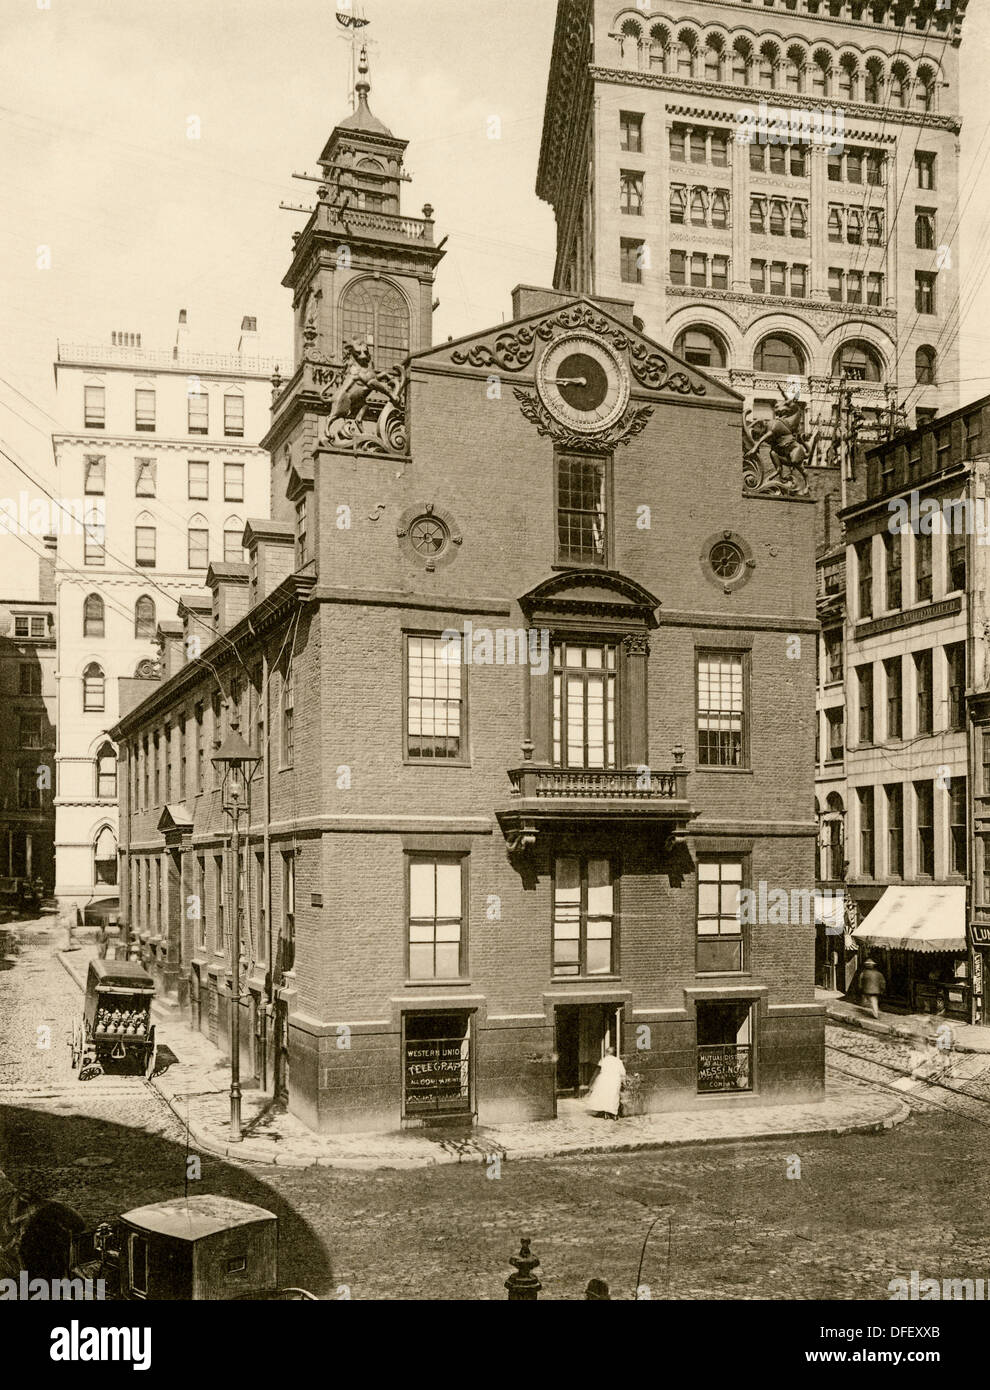 Old State House, il Campidoglio coloniale, Boston, 1890s. Fotografia di antiquariato Foto Stock